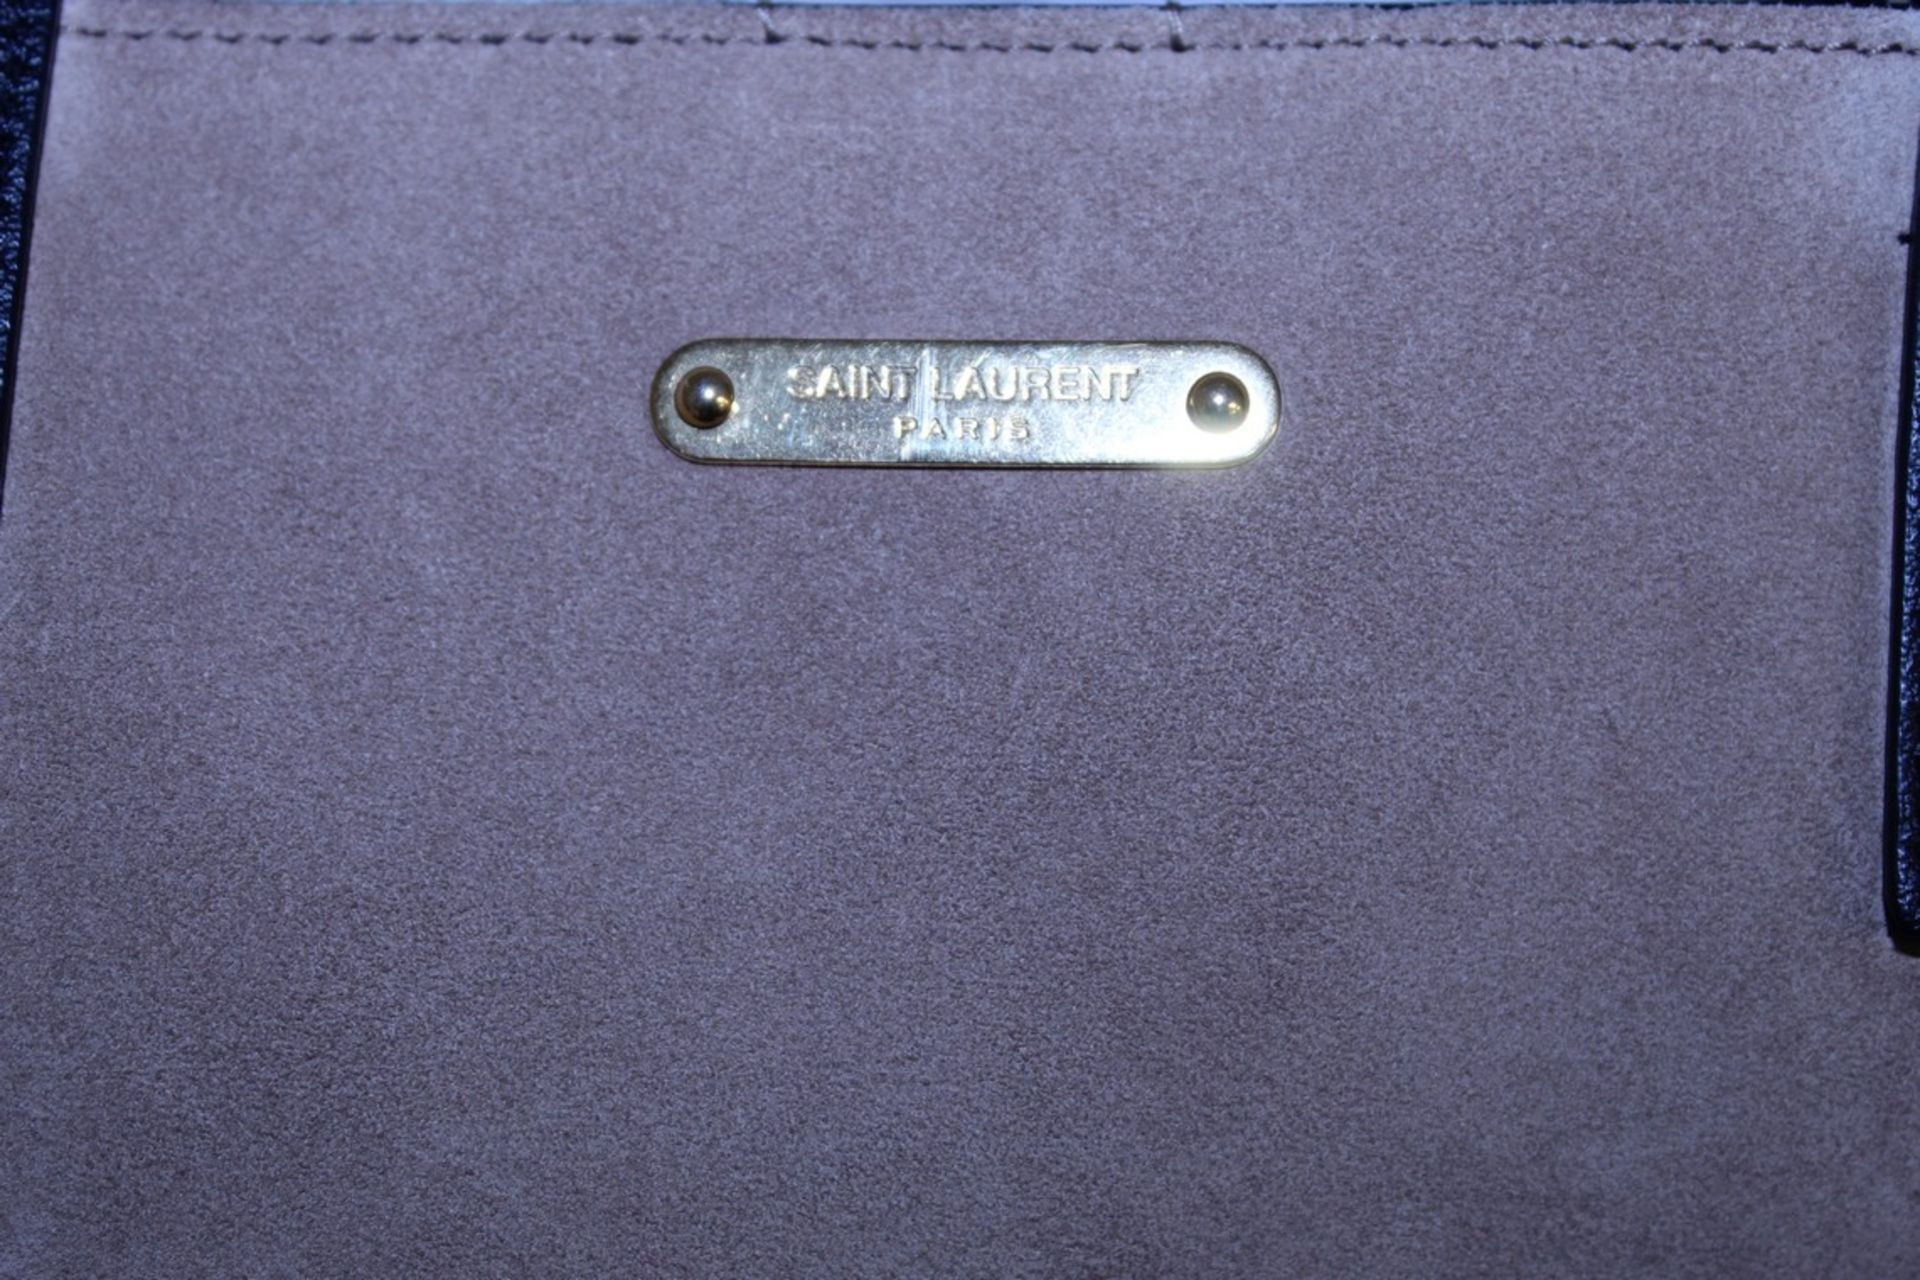 Rrp £1,490 Yves St-Lauren Medium Tassle Tote Bag, Dark Beige/Black Suede Leather, Black Leather - Image 3 of 5